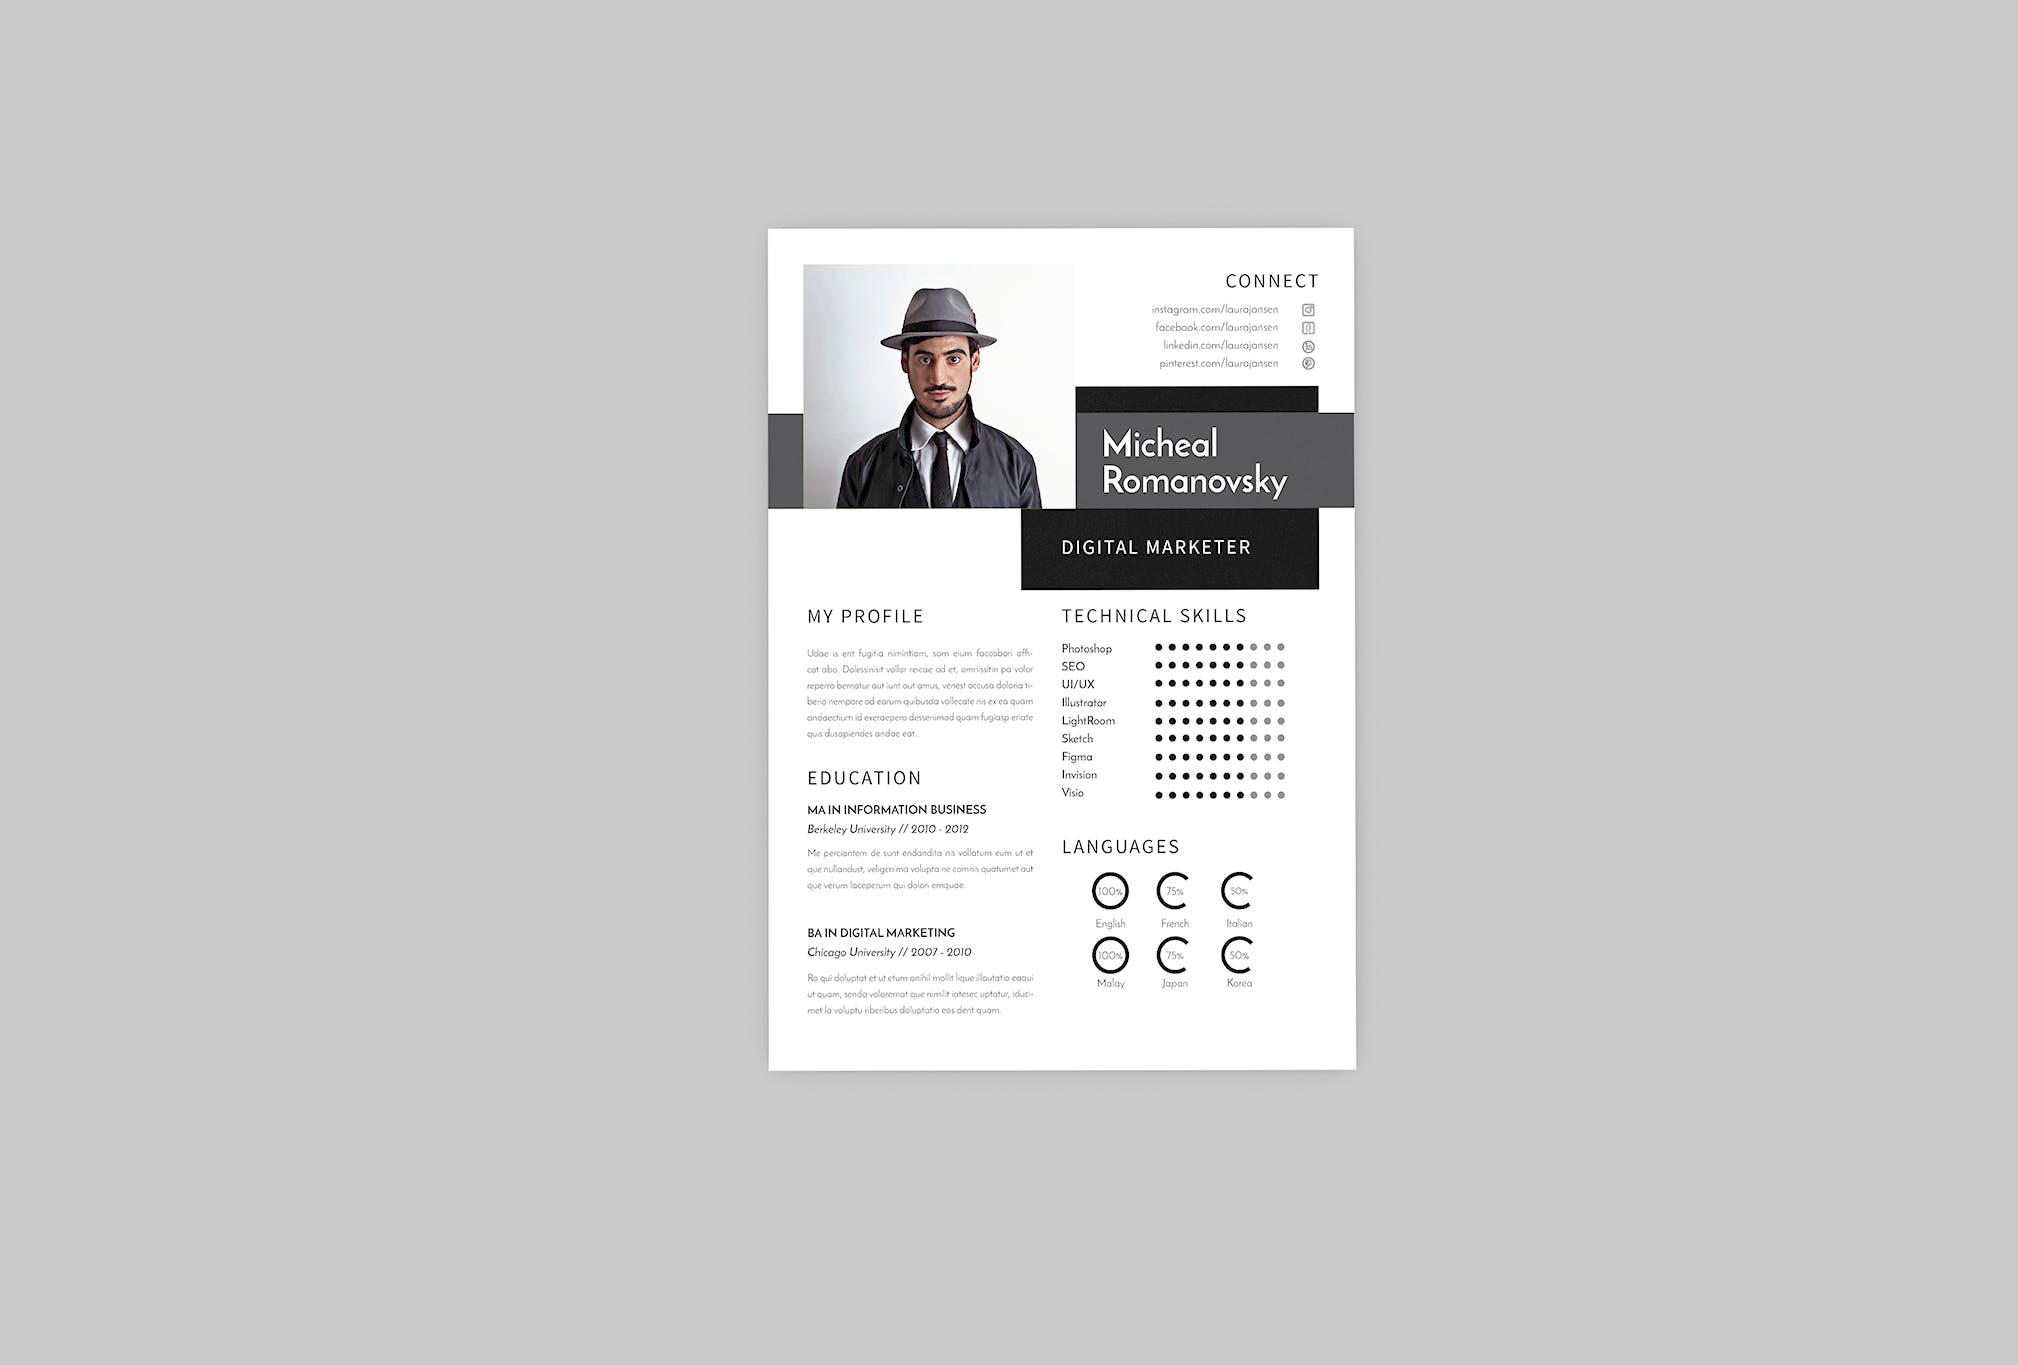 数字营销经理16设计网精选简历模板 Micheal DIgital Resume Designer插图(2)